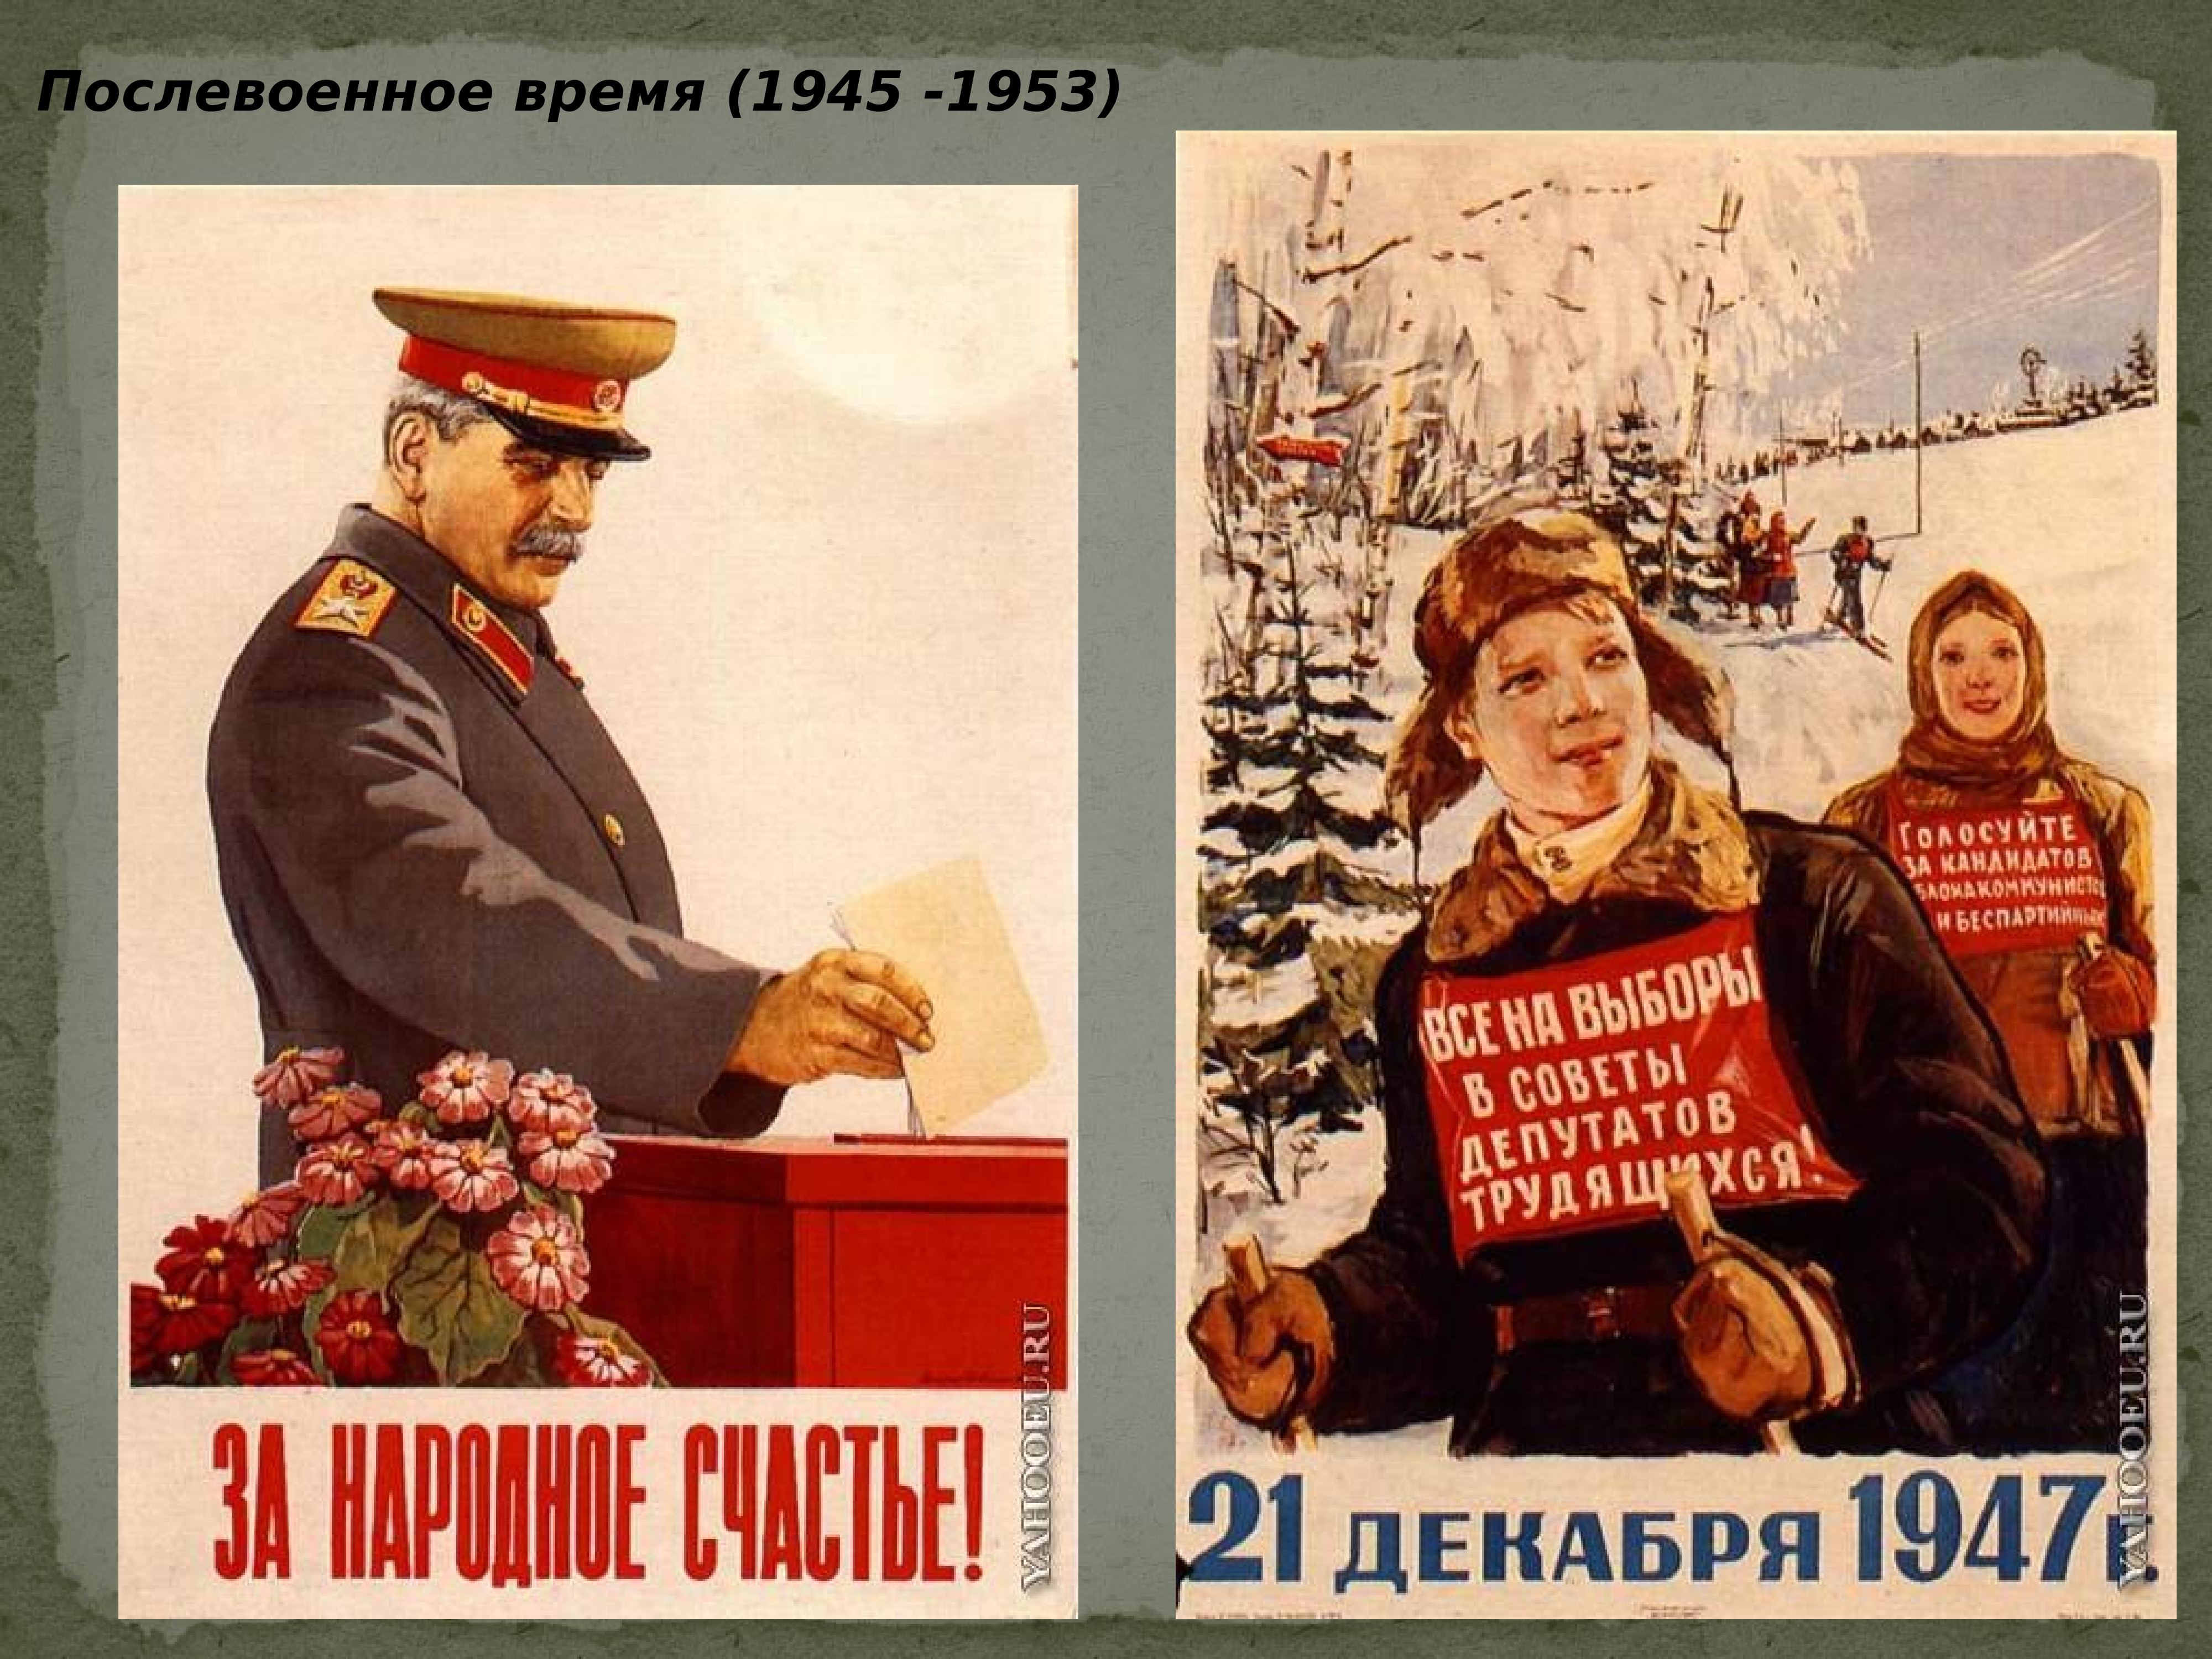 Произведения советского периода. Советские плакаты. Советские послевоенные плакаты. Послевоенный период плакаты. Послевоенное время 1945-1953.